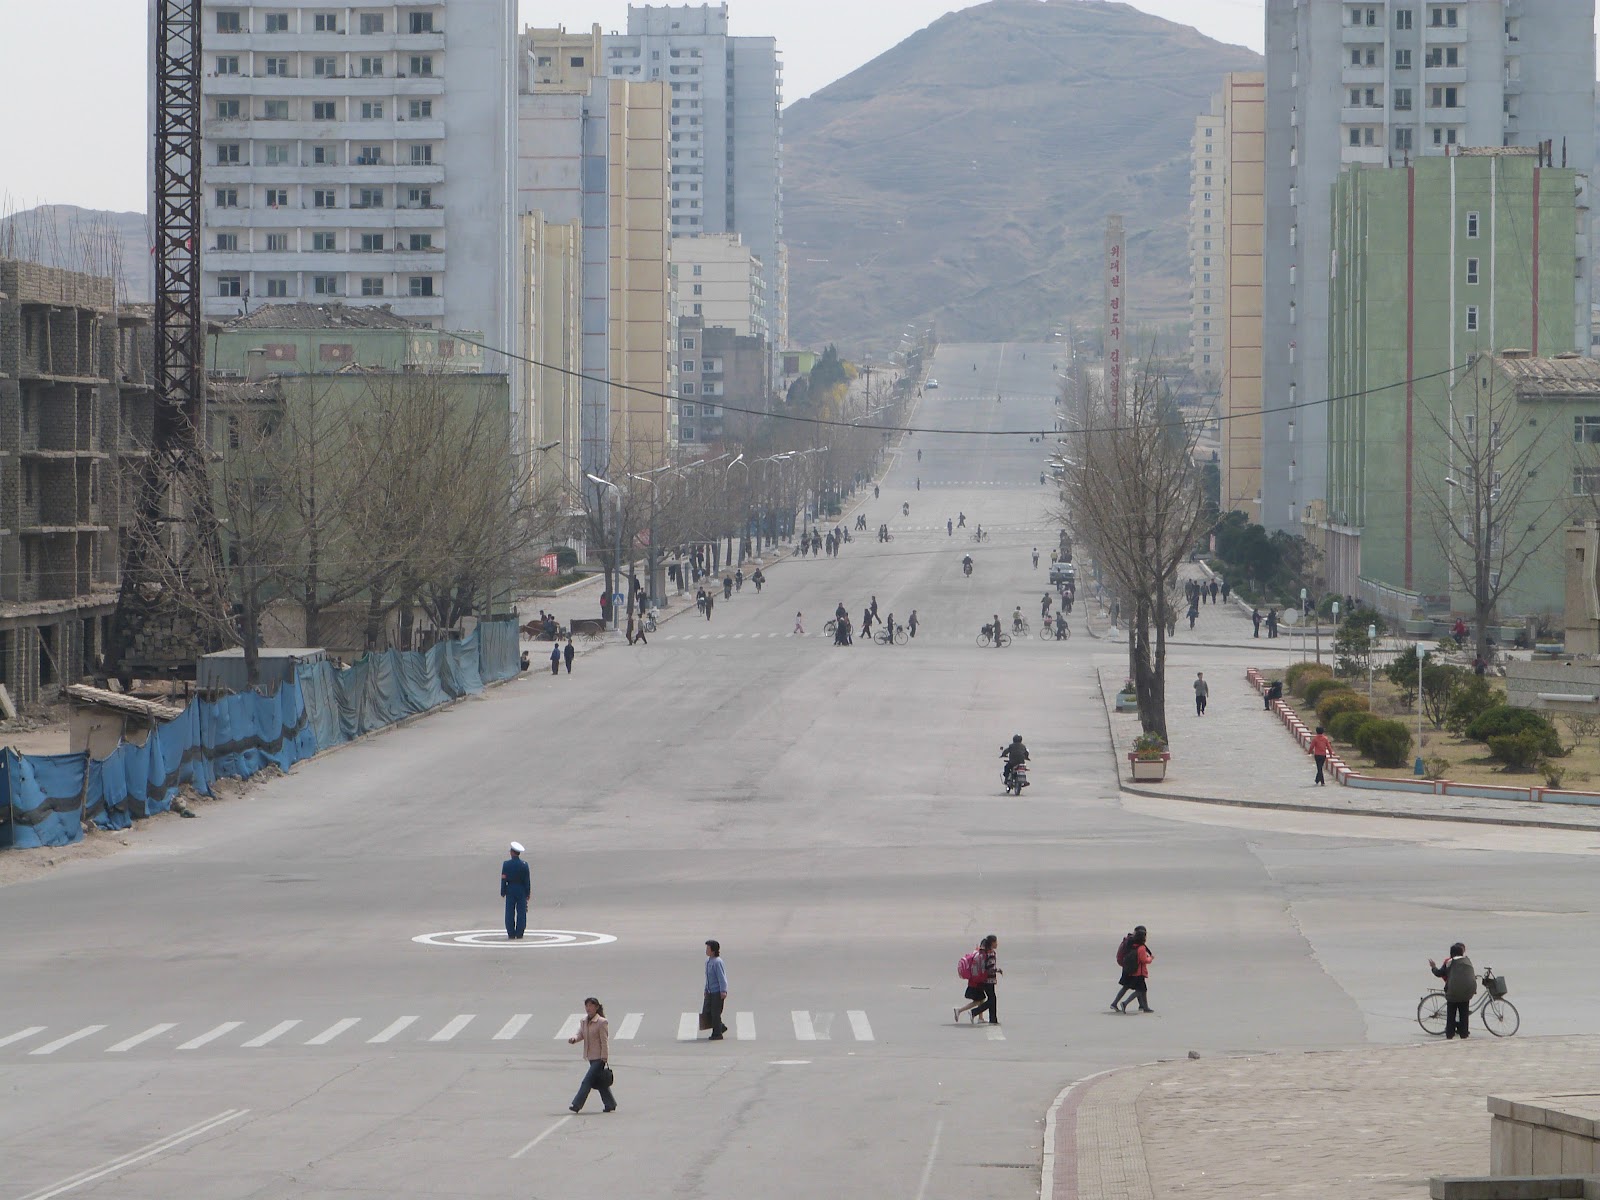 North Korea - Entering ´The Dark´: Kaesong - DMZ Border town